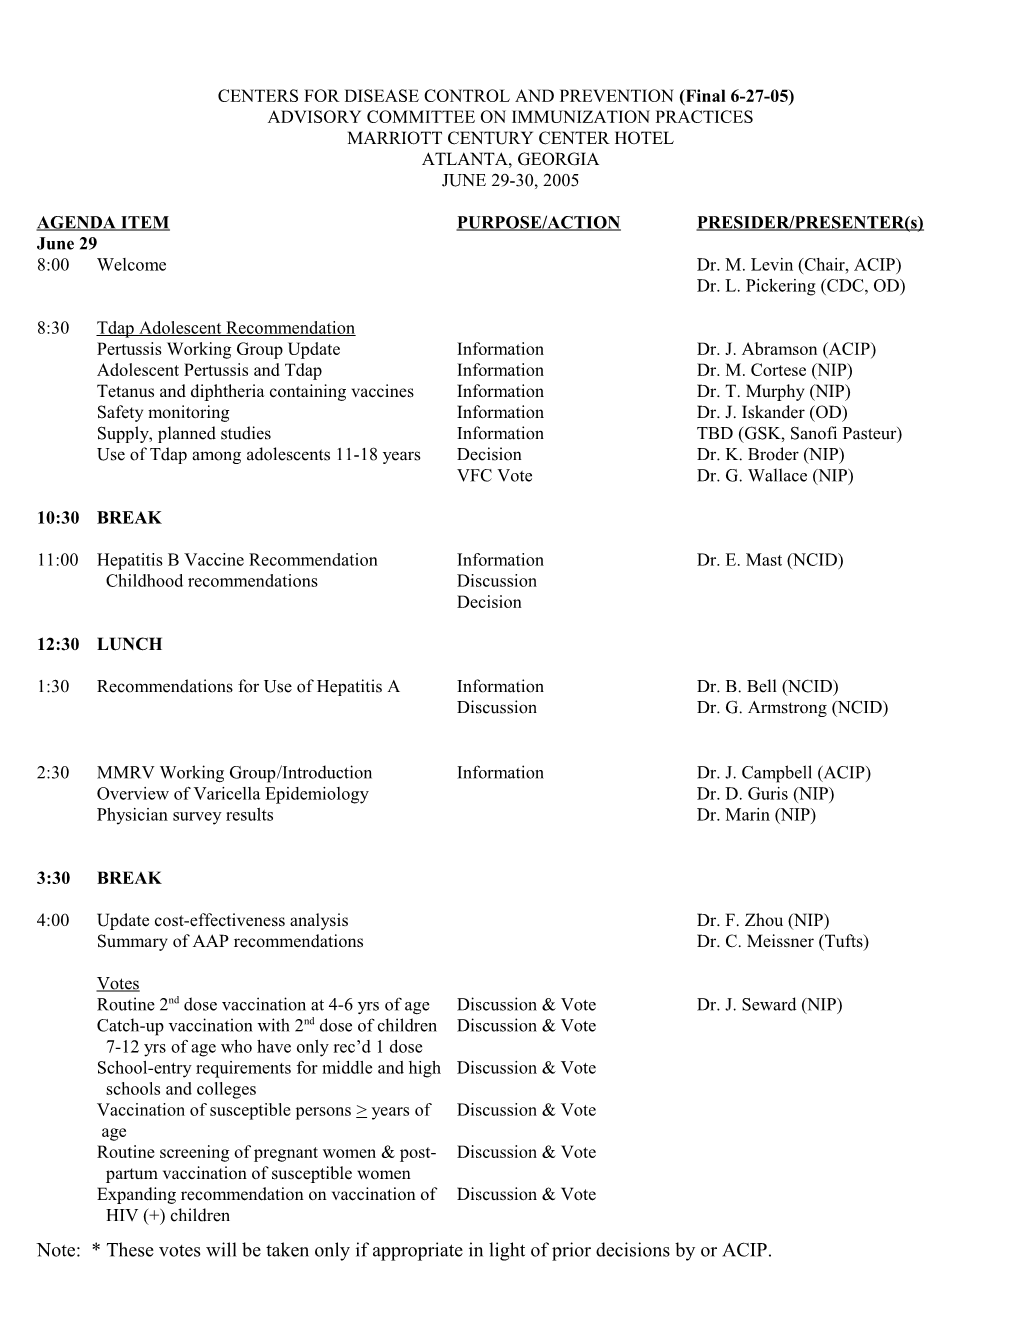 Agenda of the ACIP Meeting - June 29-30, 2005